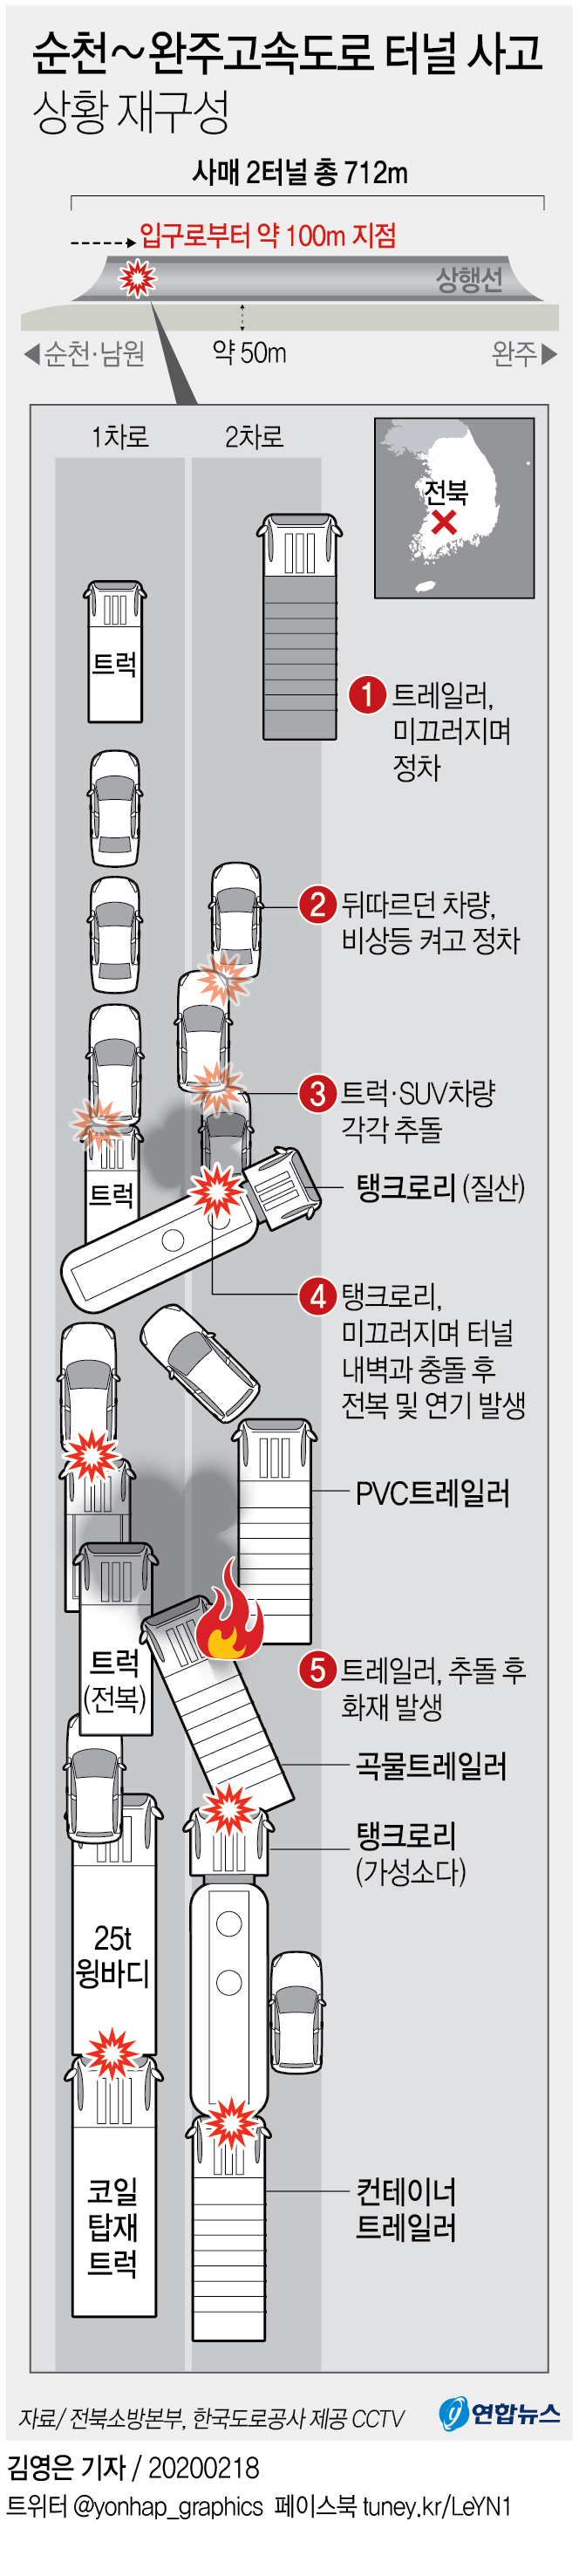 [그래픽] 순천∼완주고속도로 터널 사고상황 재구성(종합)